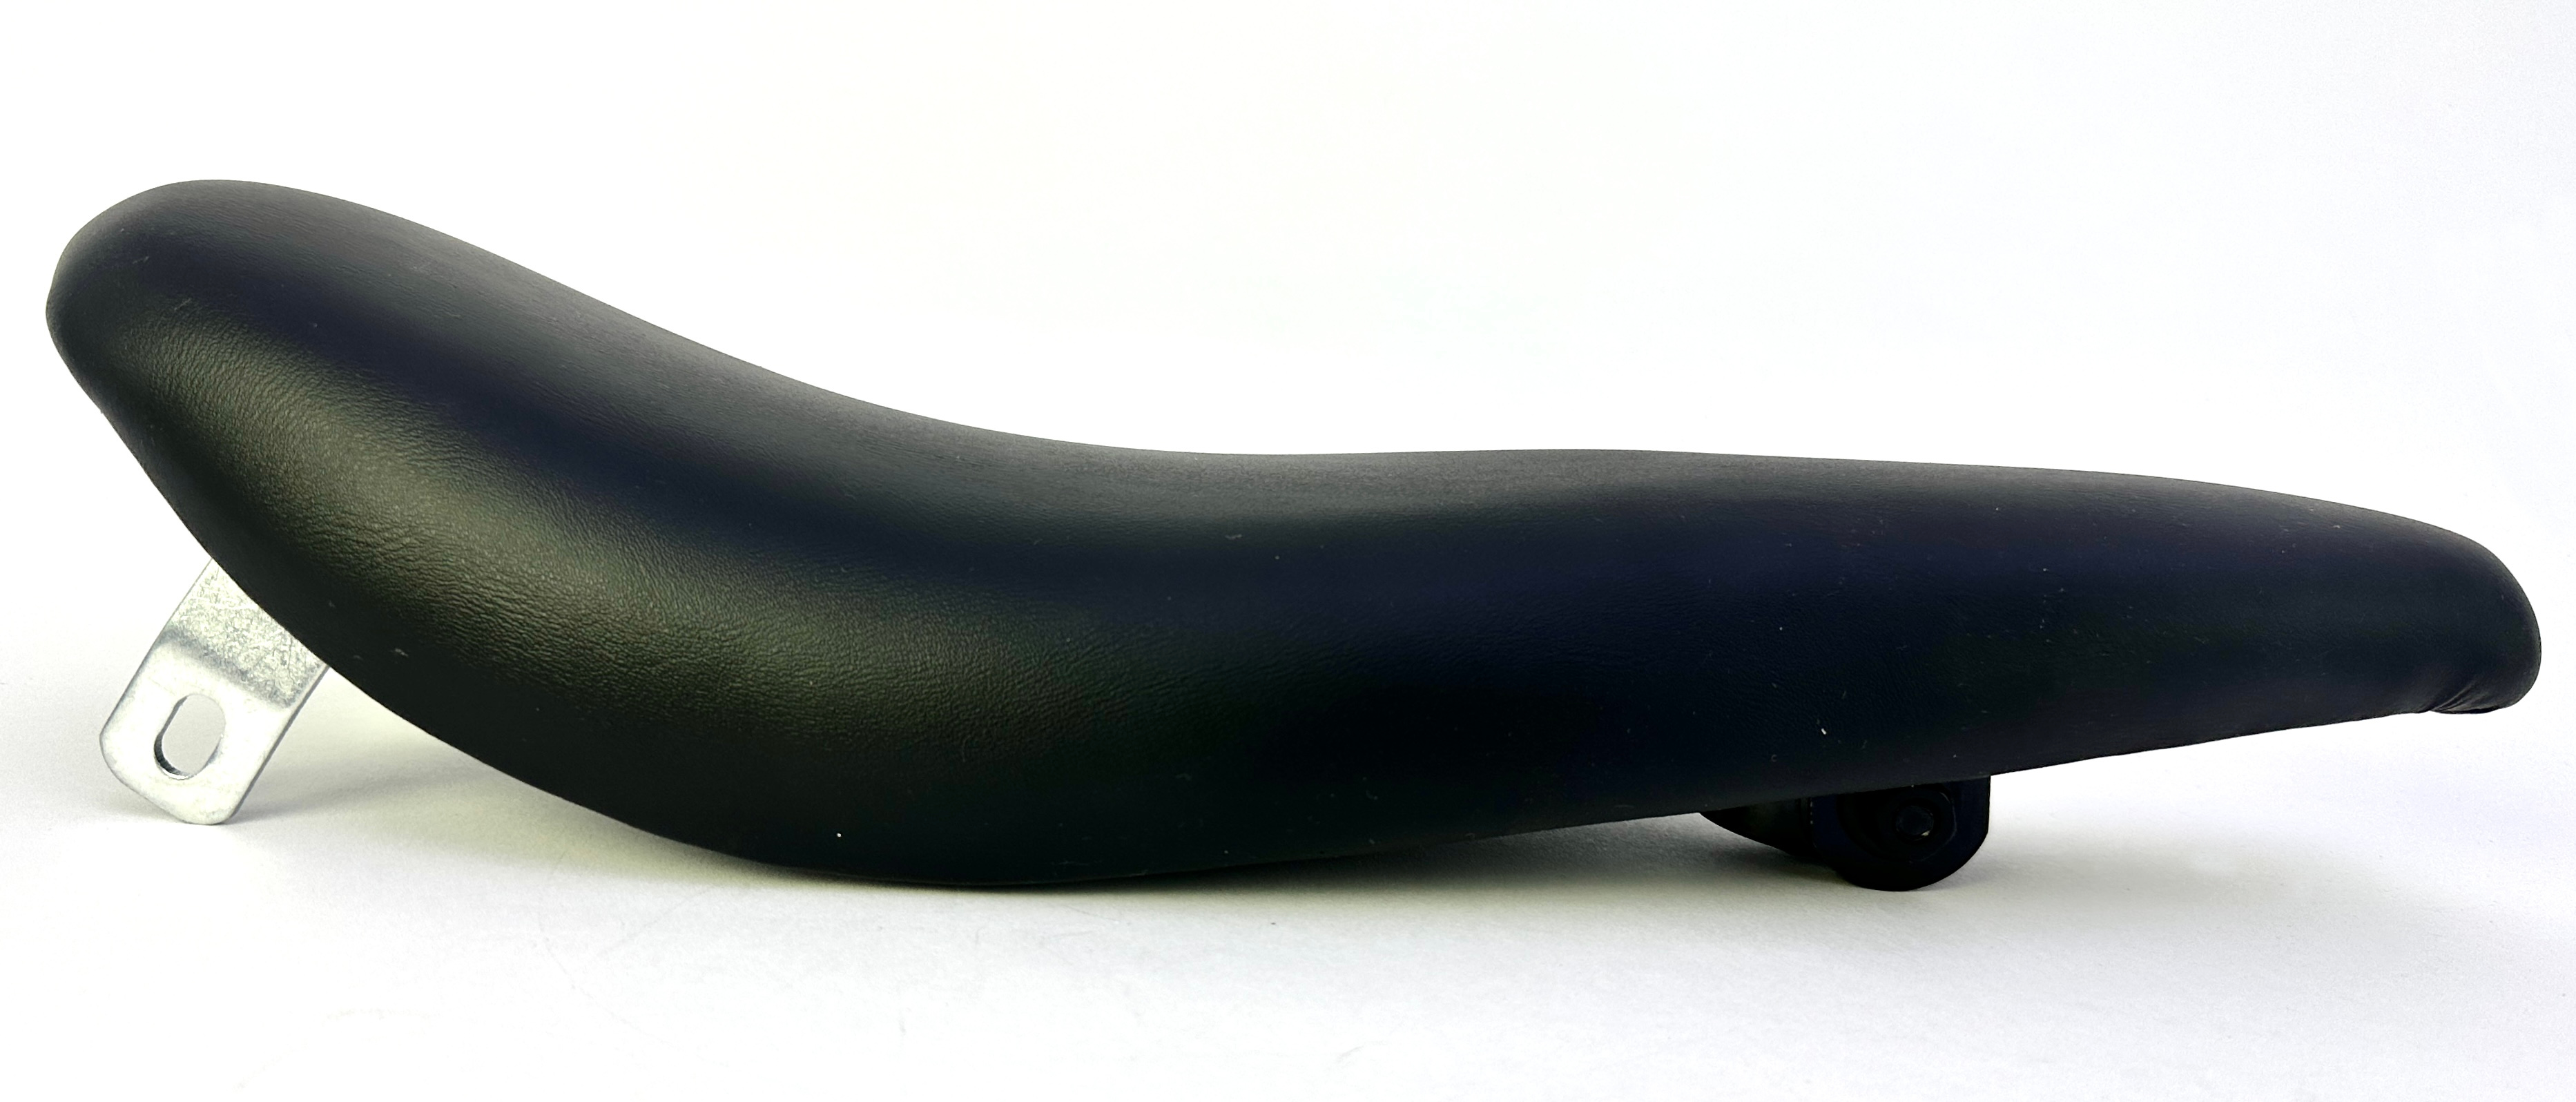 Sillín Banana imitación cuero con soporte de montaje para el sissy bar negro.